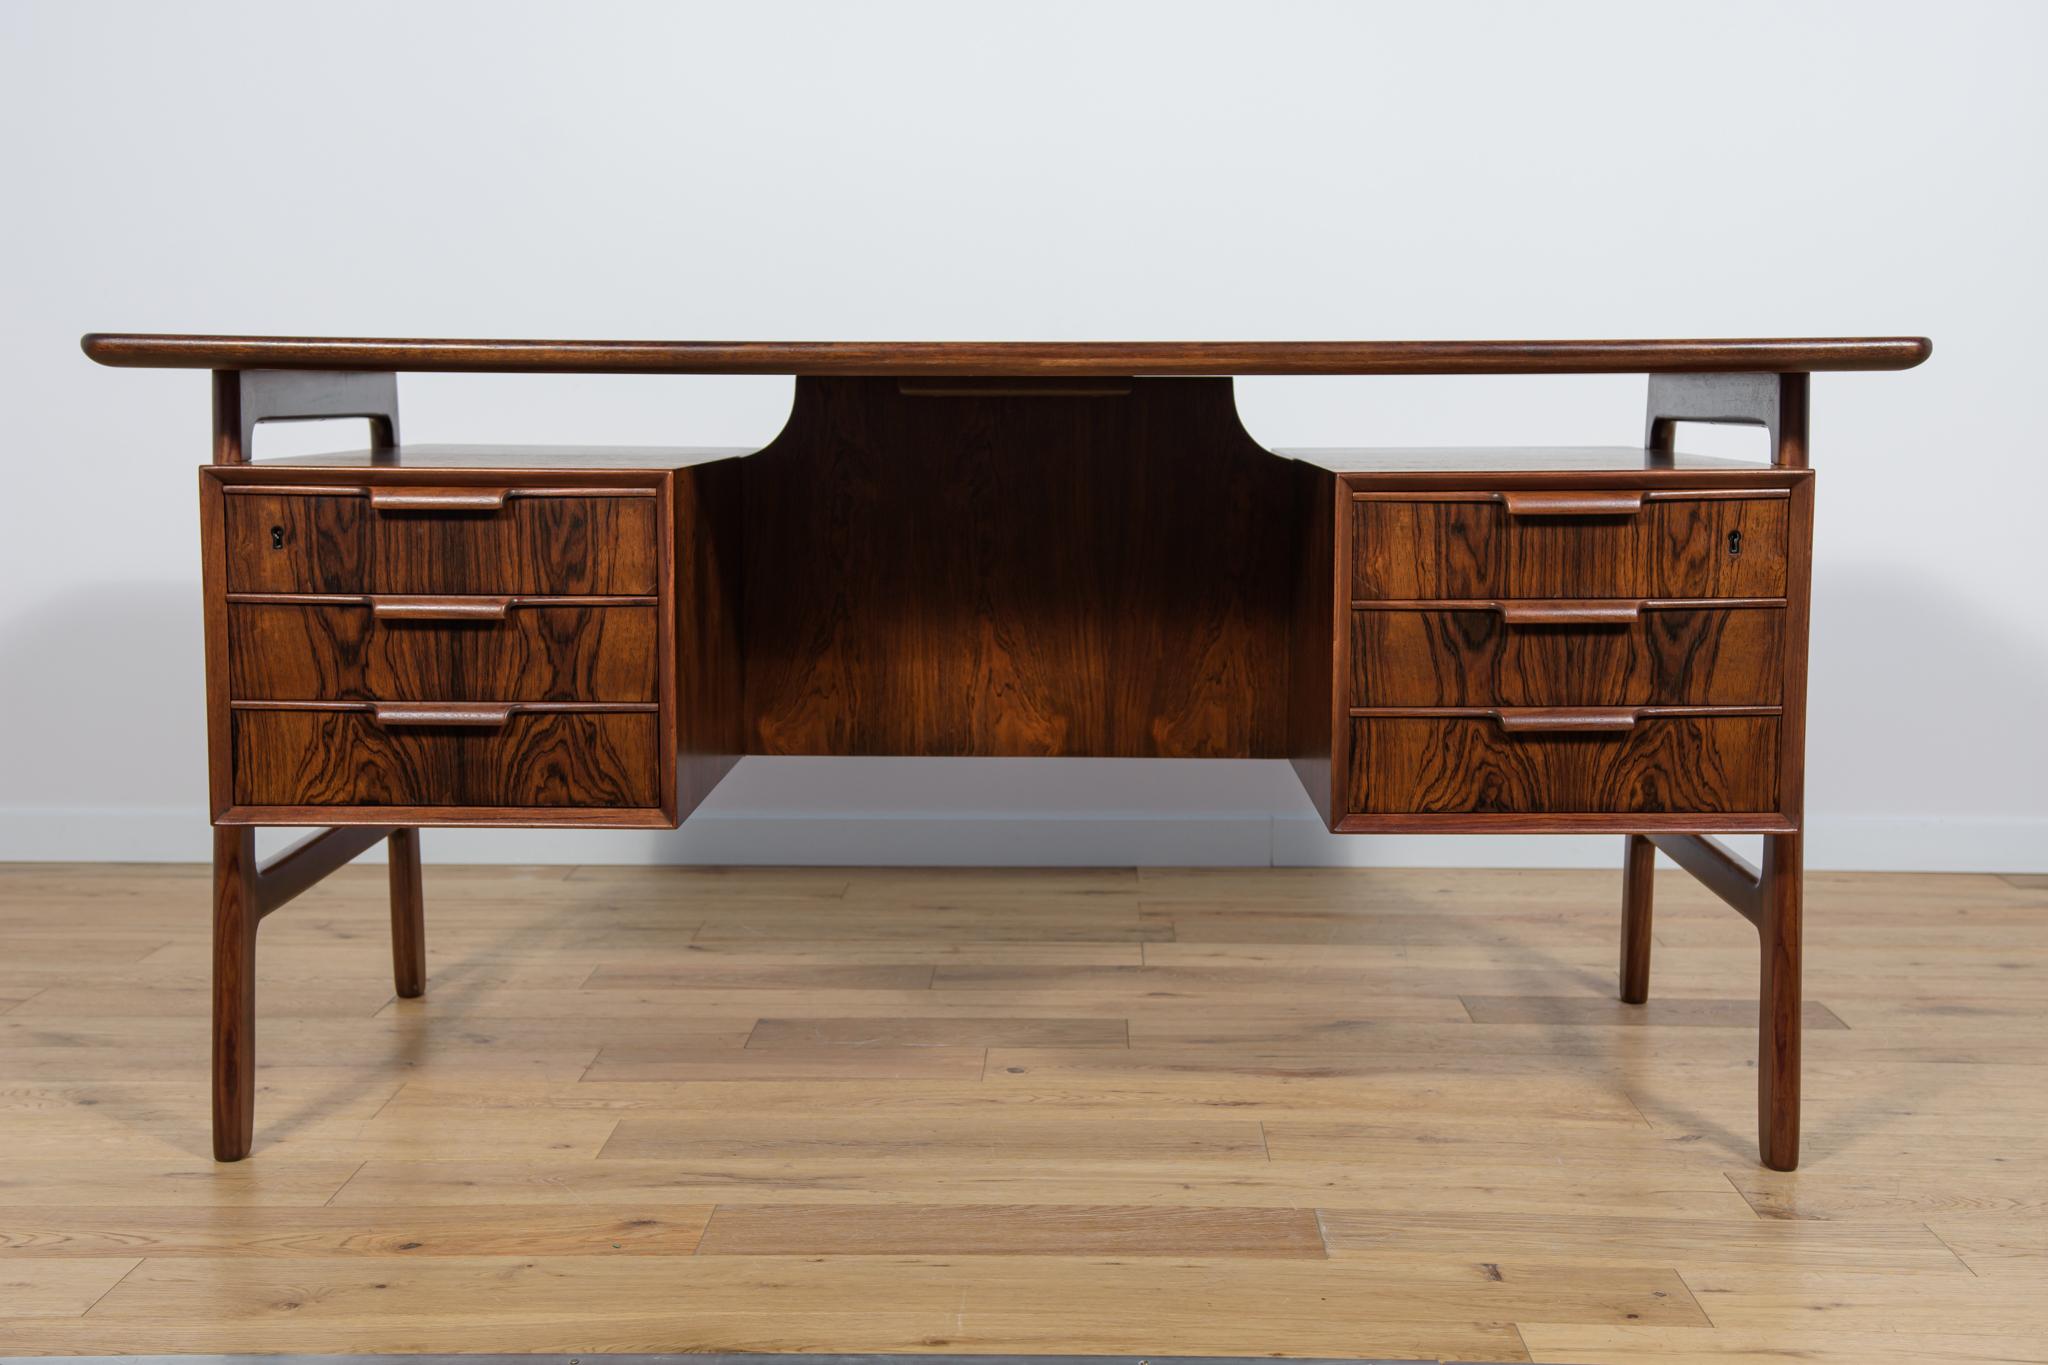 Bureau du milieu du siècle, modèle 75, produit par la fabrique de meubles danoise Omann Jun. Un bureau au design et à la fabrication de haute facture, caractéristique du design danois des années 1960. A l'avant, deux modules de 3 tiroirs chacun, à